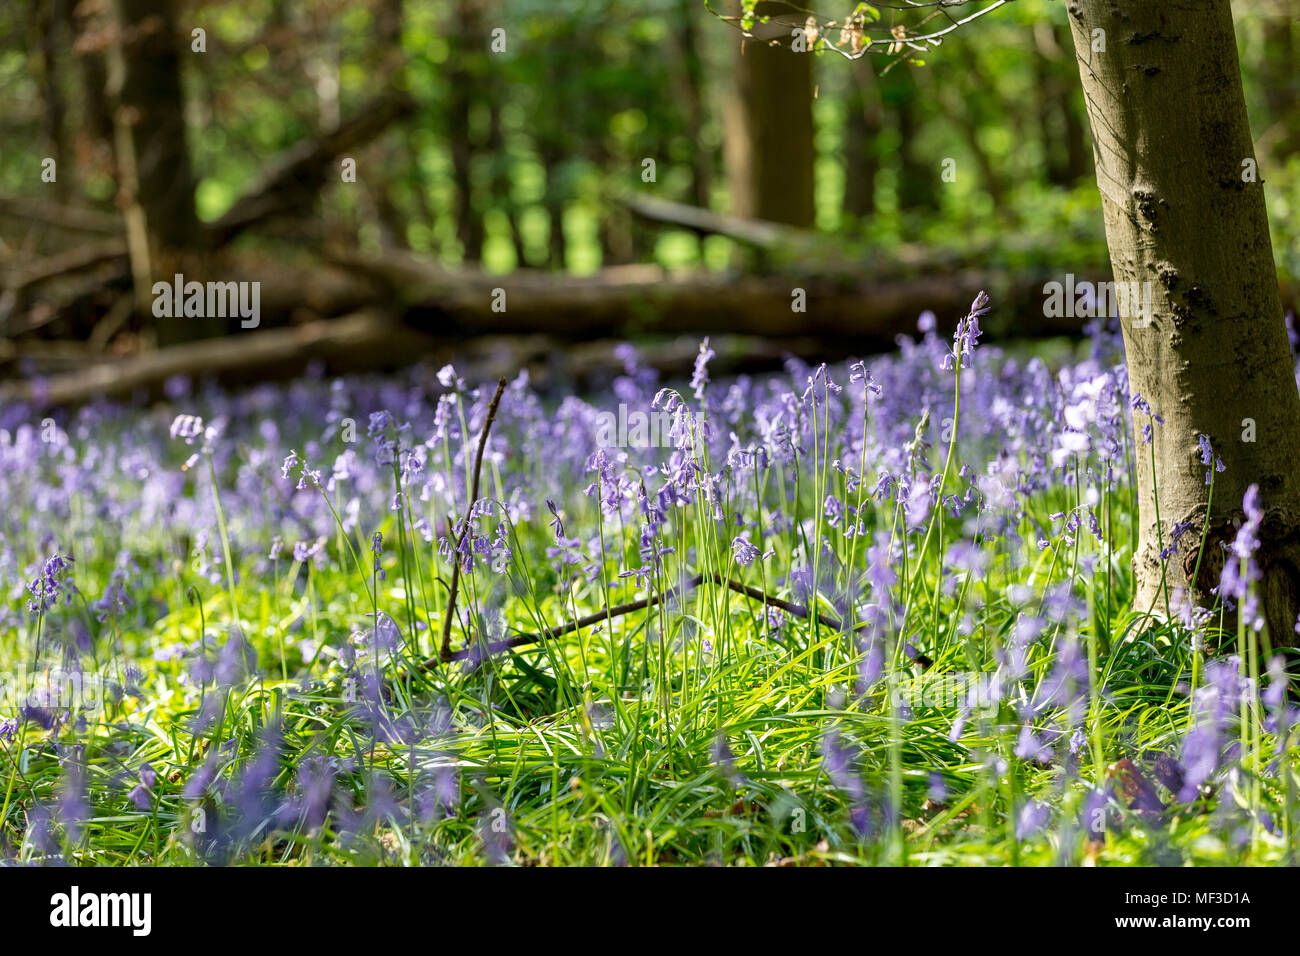 Tapis de jacinthes en bois de hêtre, Buckinghamshire, Angleterre Royaume-uni Banque D'Images